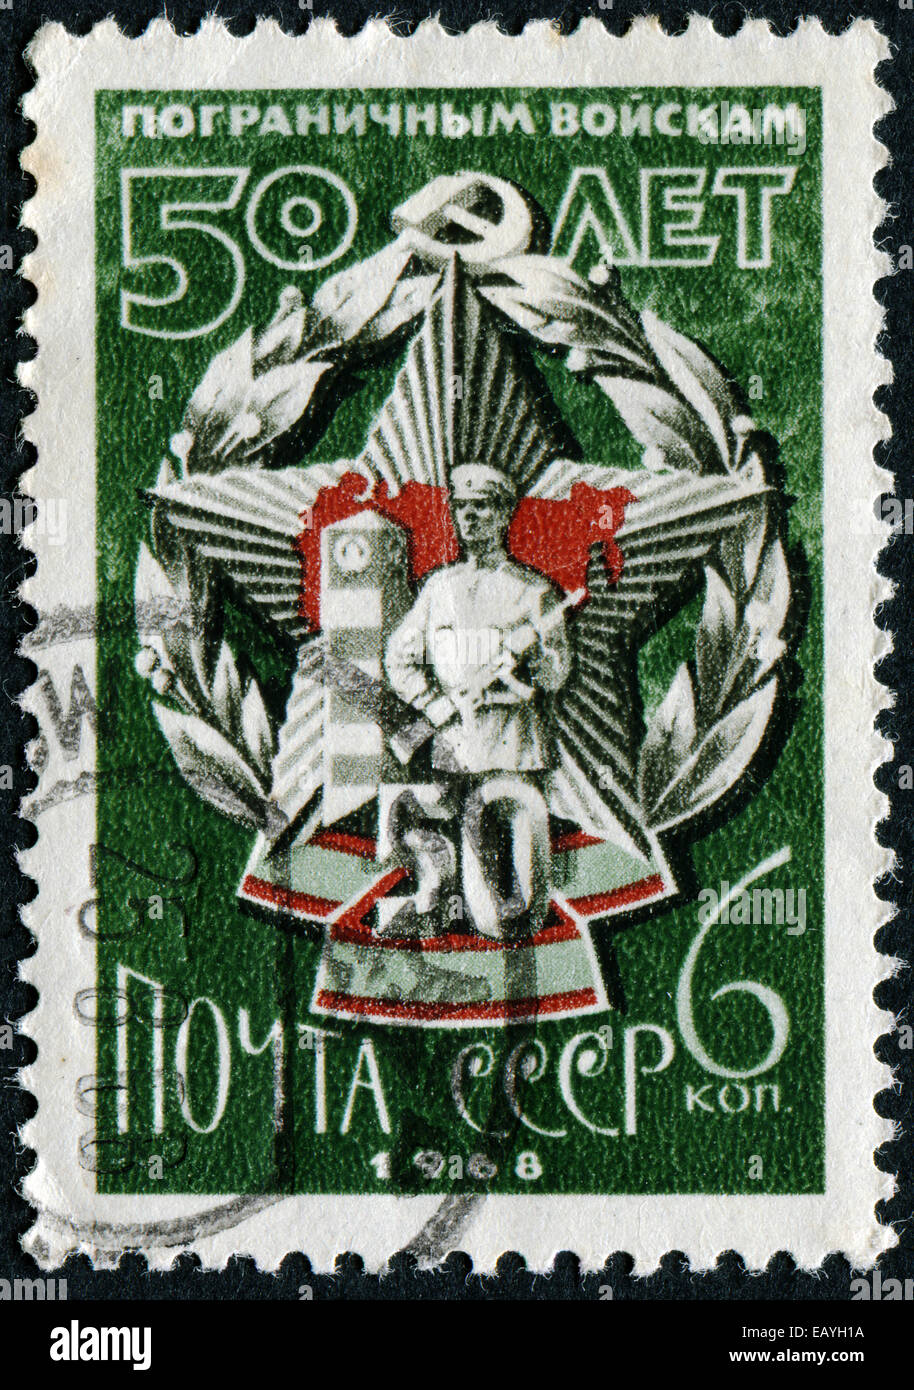 Urss - circa 1968 : timbre imprimé en URSS montre des garde-frontières, circa 1968 Banque D'Images